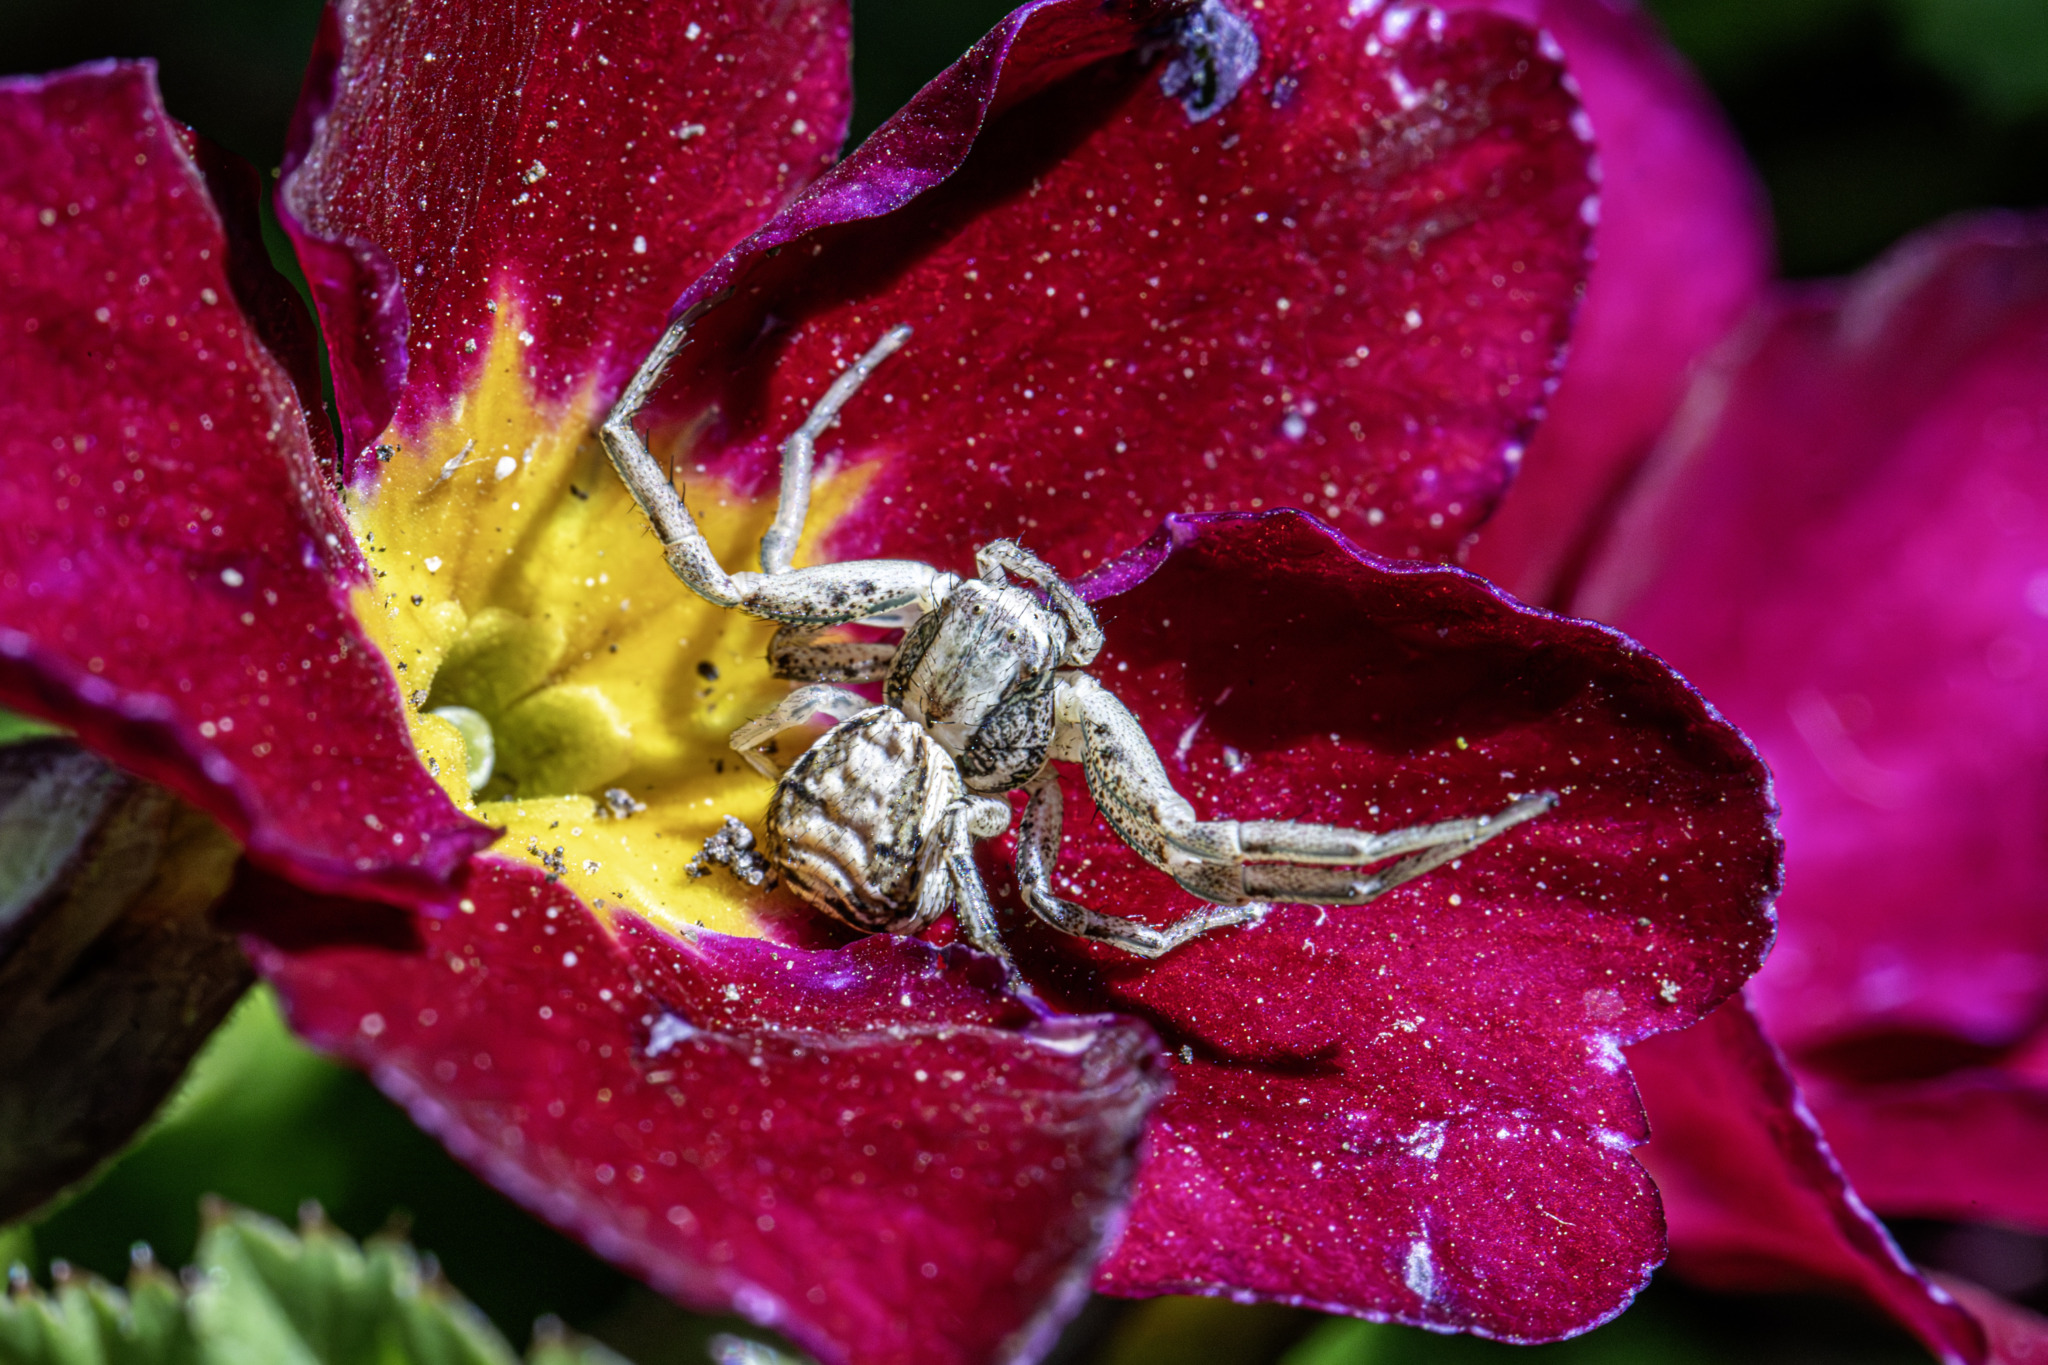 Ground crab spider (Xysticus cristatus)